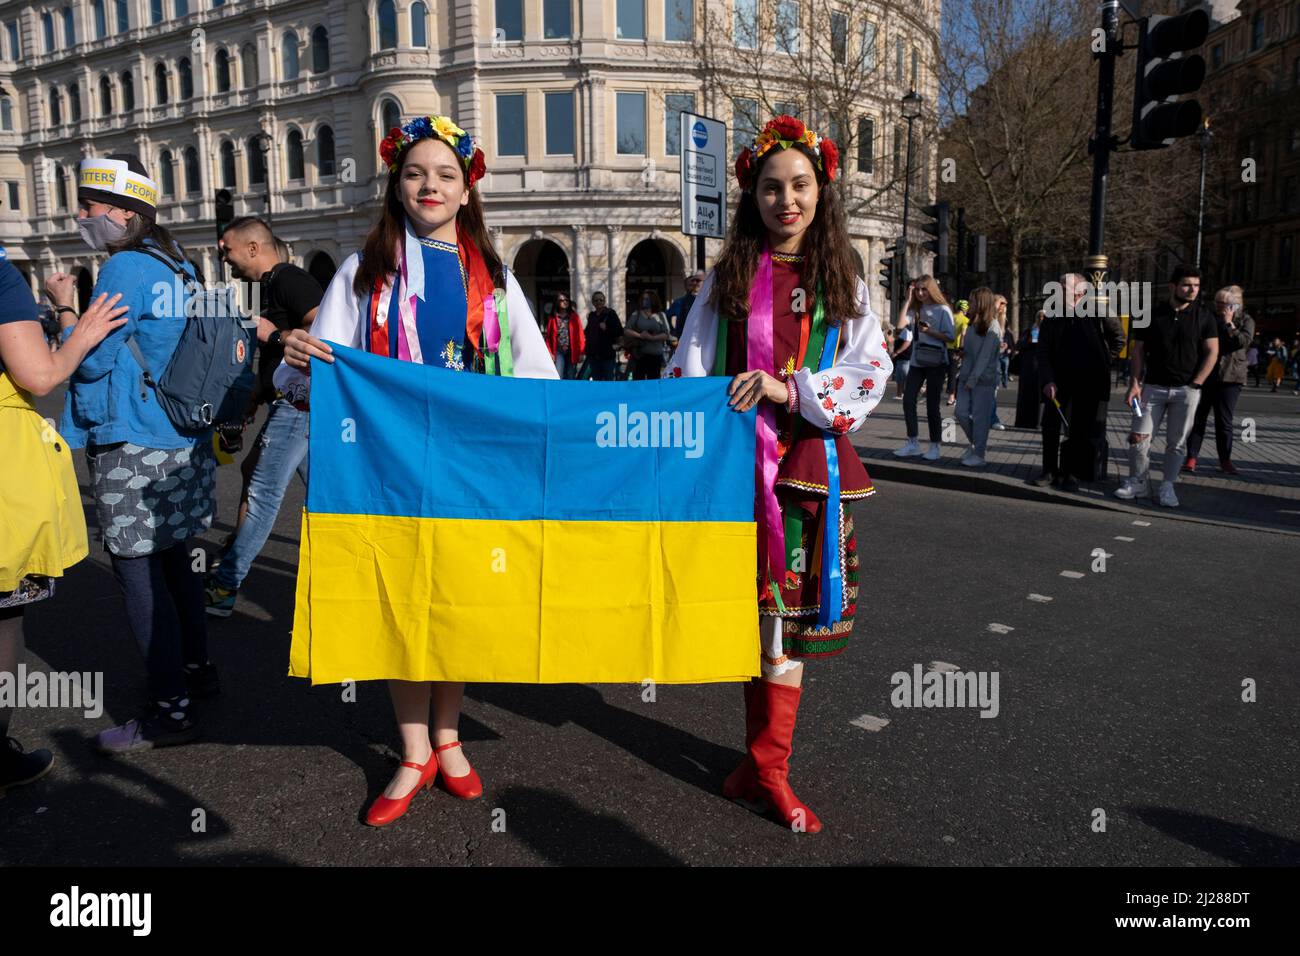 Junge Frauen mit traditionellen Blumen im Haar treffen sich am 26.. März 2022 in London, Großbritannien, zu einem friedensmarsch ‘London steht mit der Ukraine’ in der Hauptstadt. Der Konflikt in der Ukraine befindet sich nun in seinem zweiten Monat, und ihr Präsident hat die Menschen auf der ganzen Welt dazu aufgerufen, sich gegen die russische Invasion und den anhaltenden Krieg in der Region zu vereinen. Die ukrainische Flagge in Gelb und Blau war überall in dieser bunten Show der Einheit zu sehen. Stockfoto